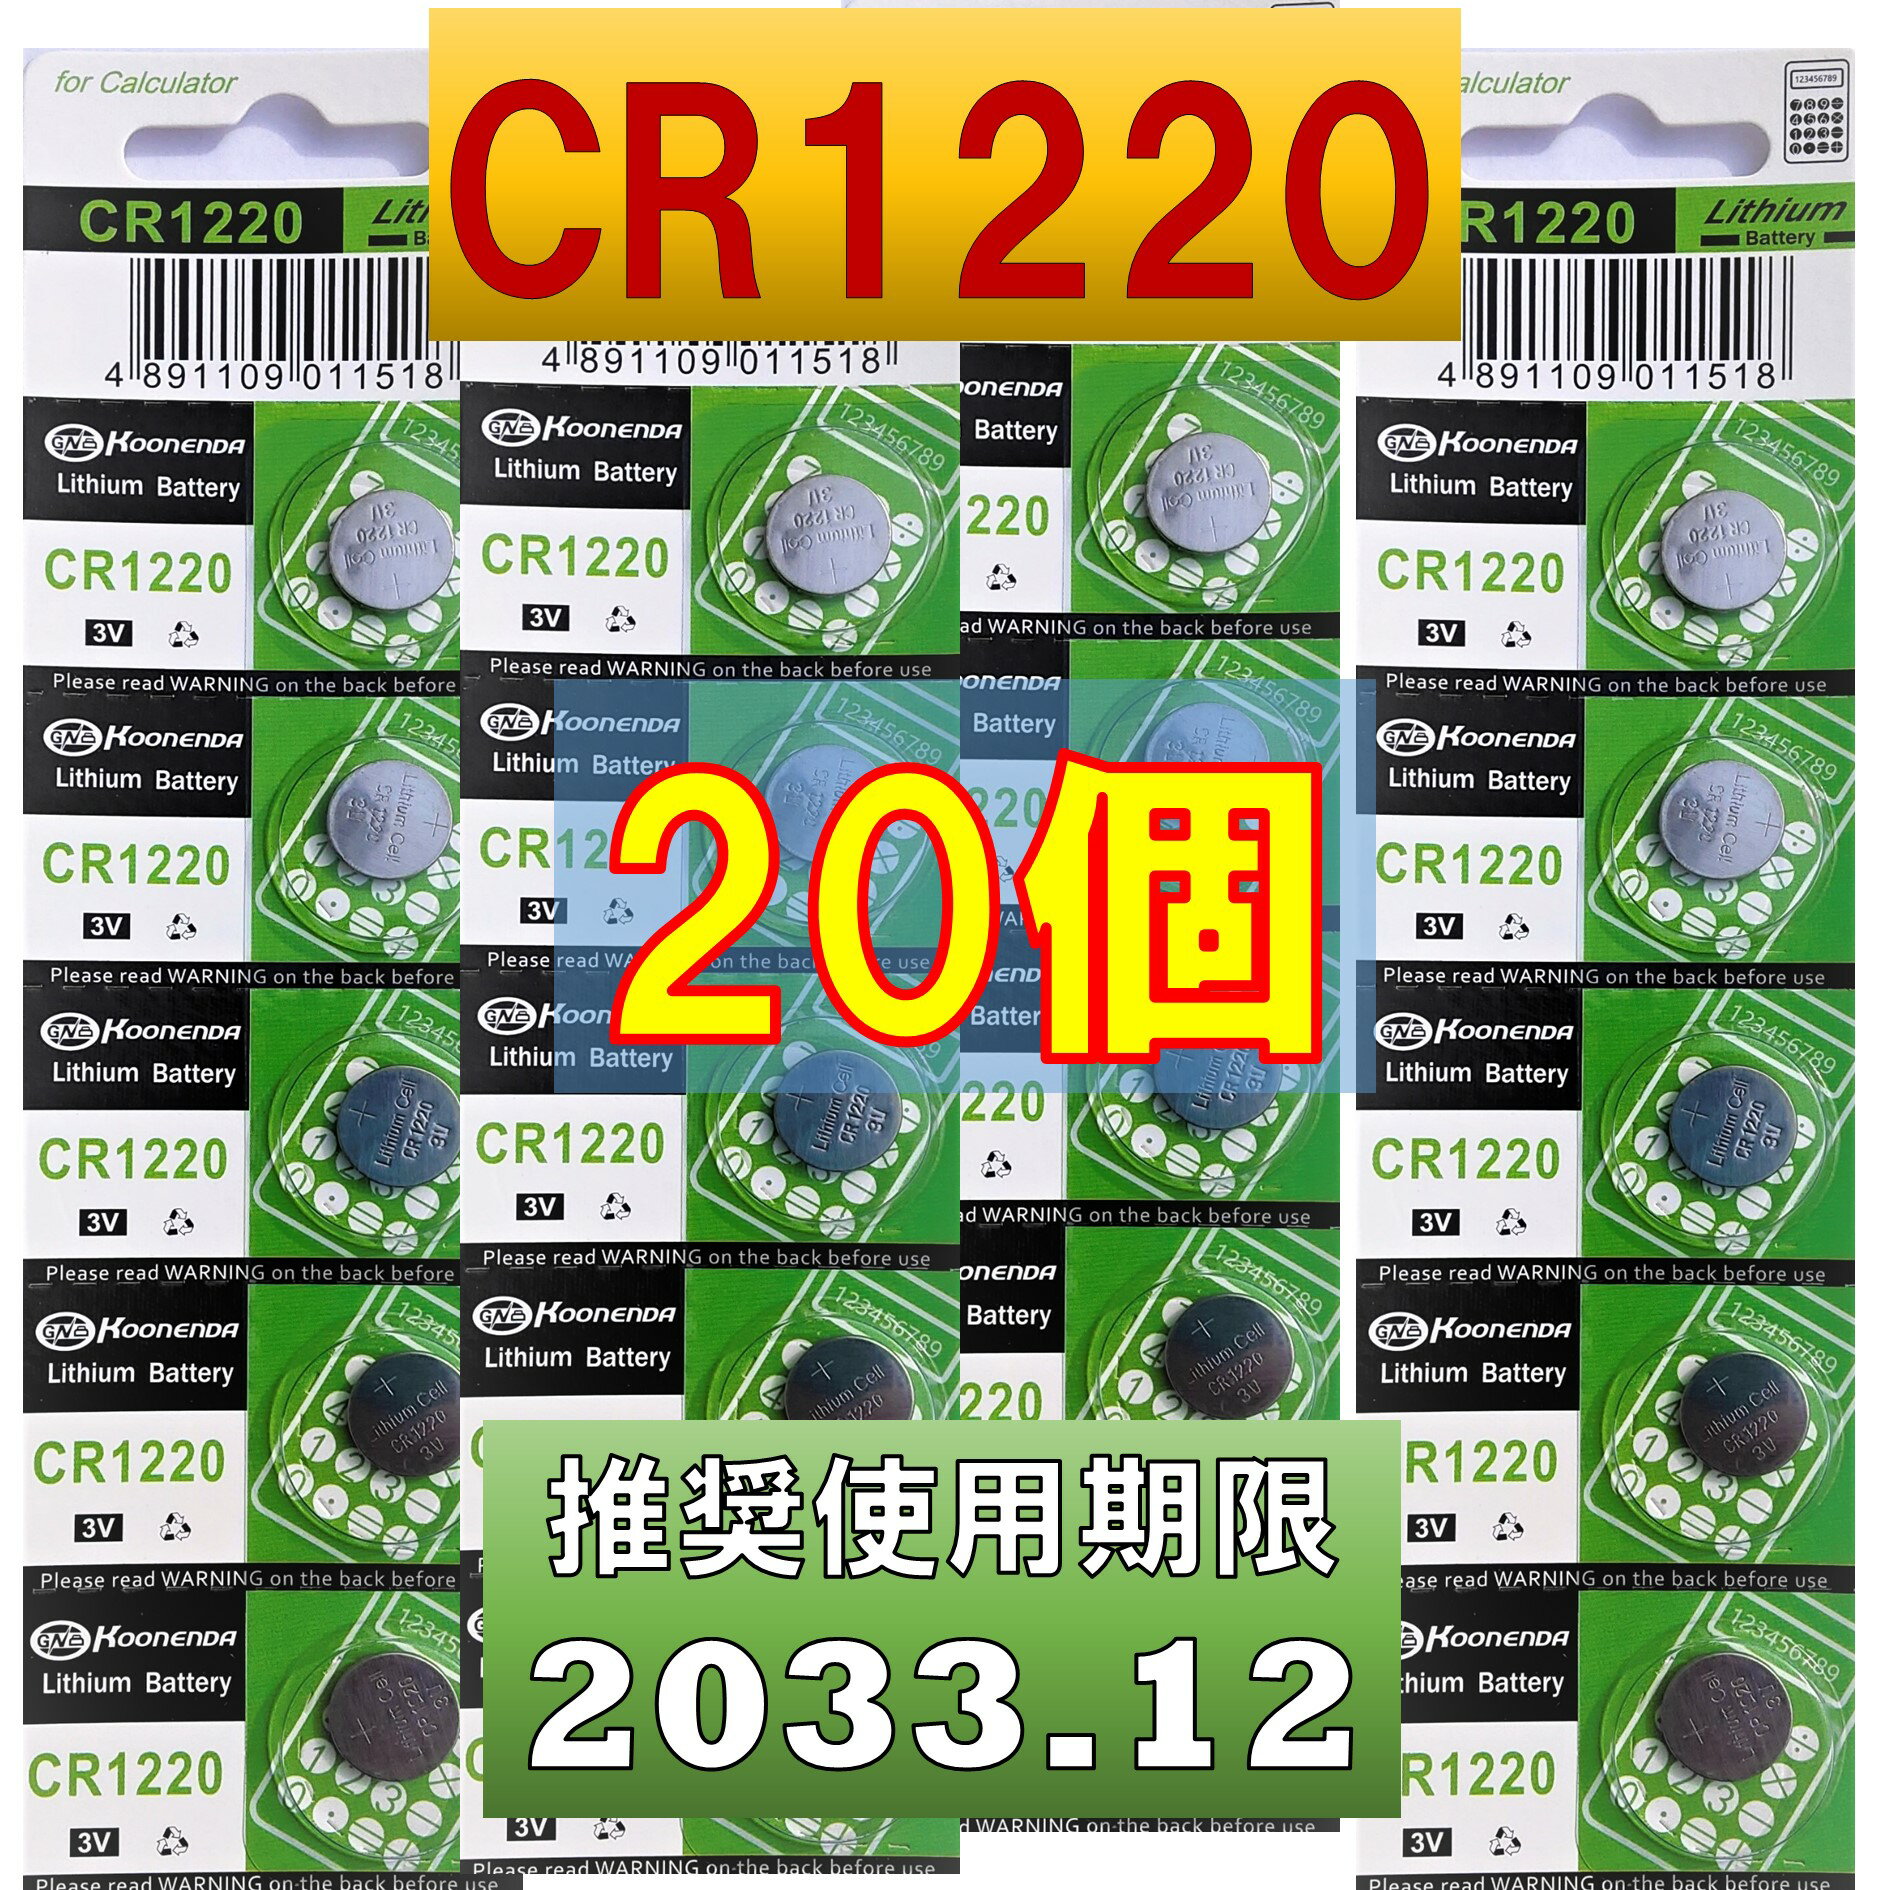 CR1220 `E{^dr 20 gp 2033N12